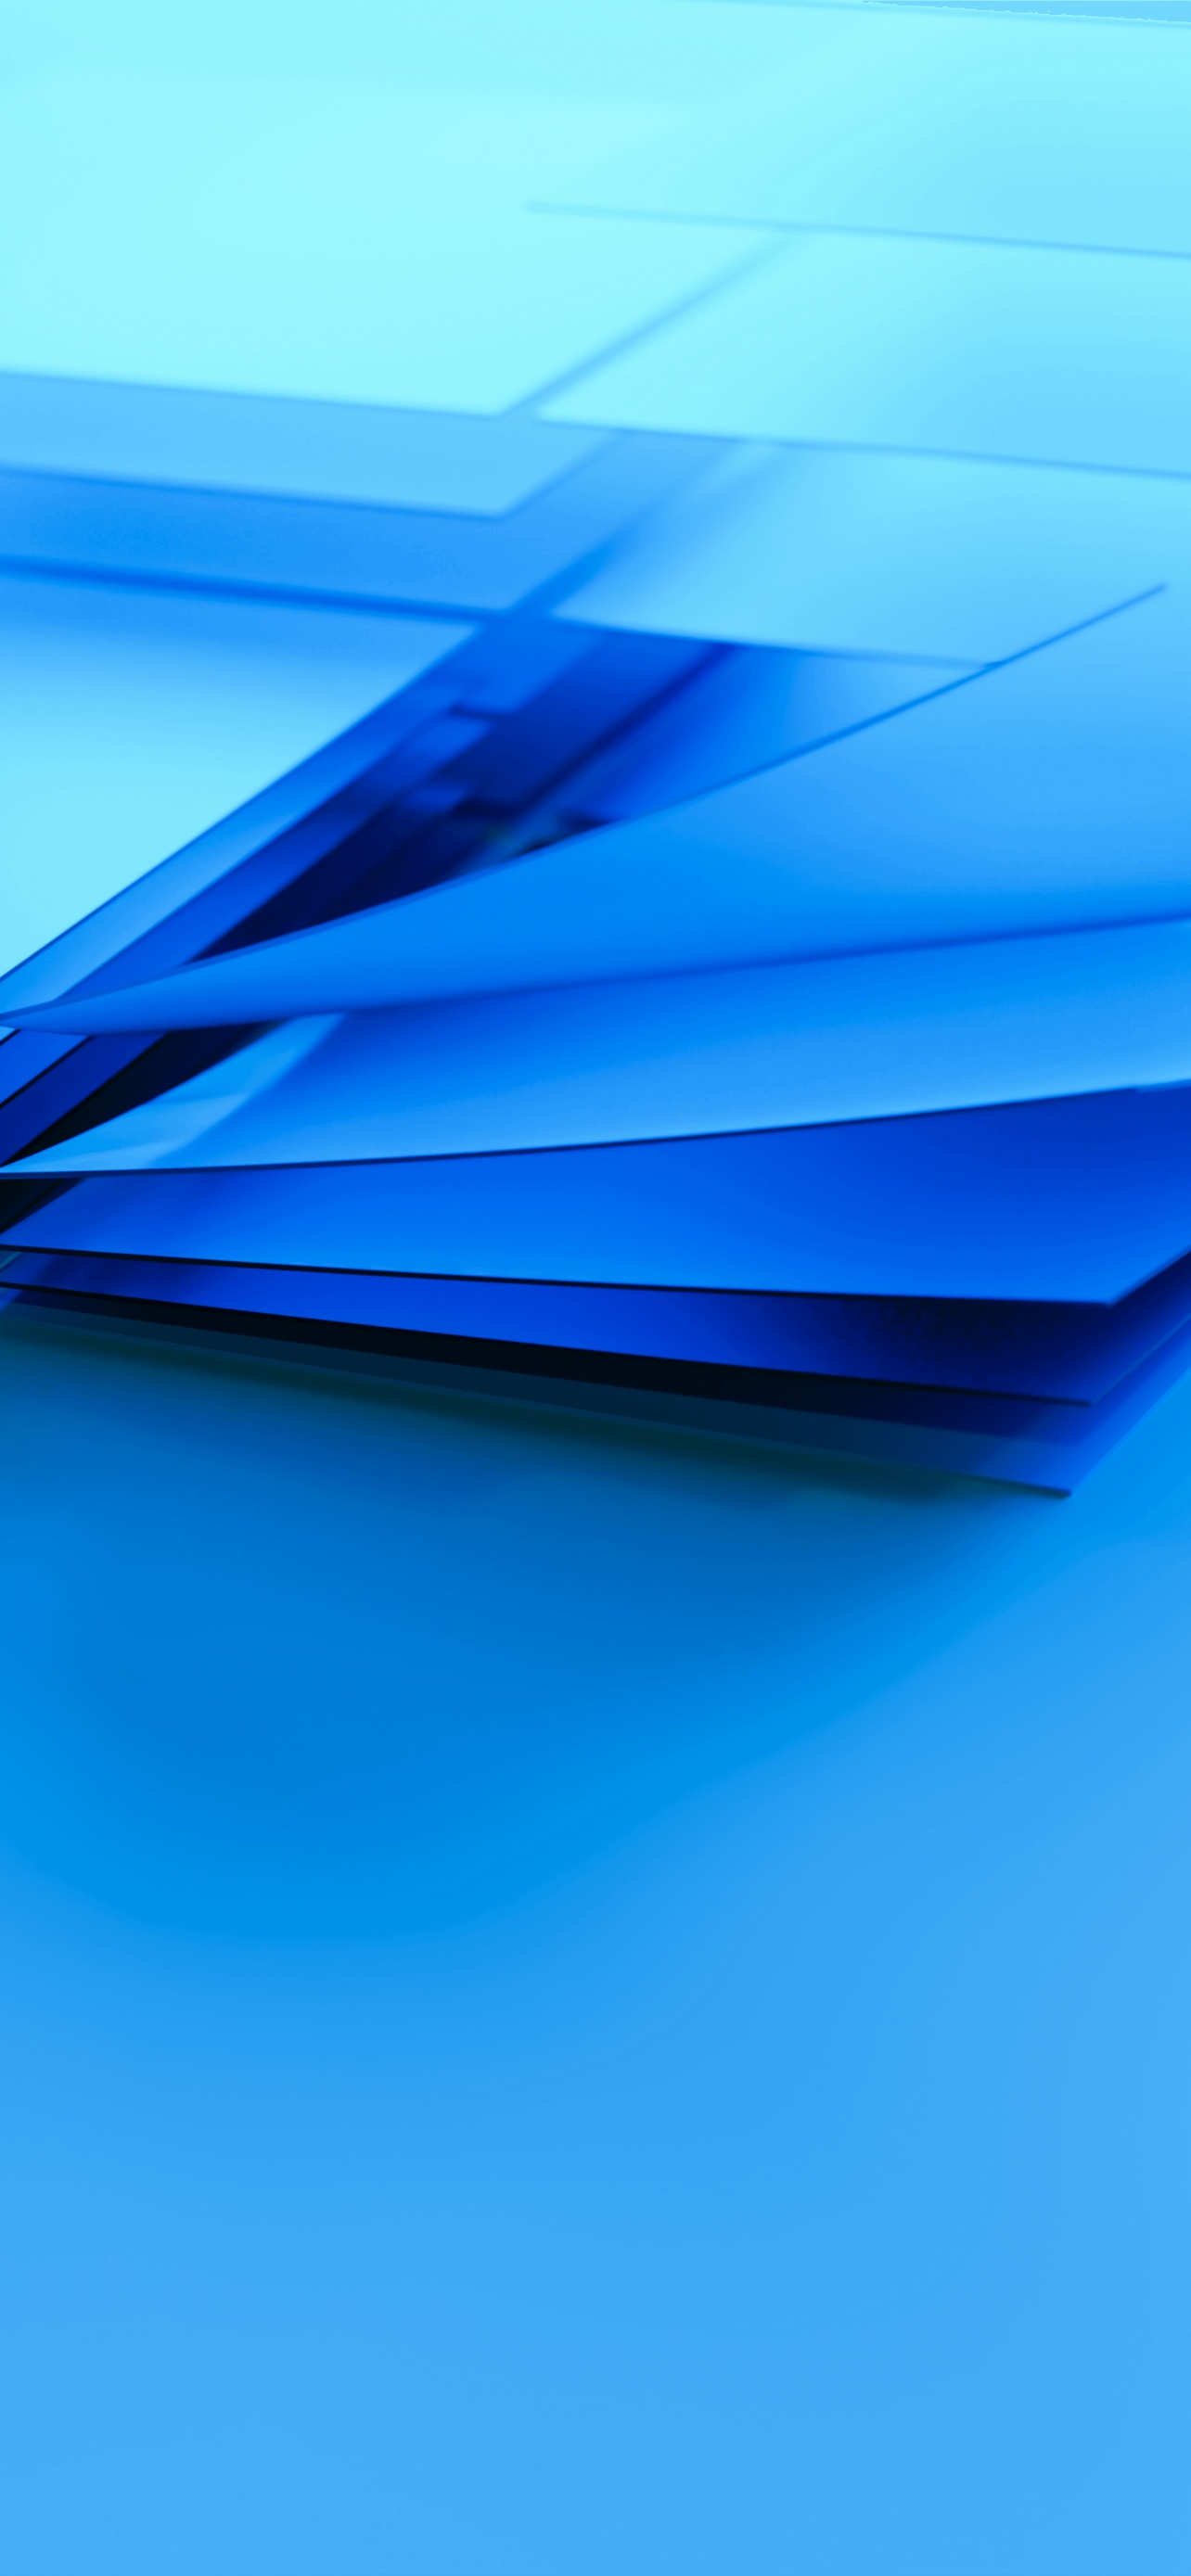 Windows 4K và 5K là những hình nền trừu tượng đẹp mắt. Hãy tận hưởng màu sắc tuyệt vời, đặc biệt trong độ phân giải cao. Thưởng thức những hình ảnh này để tăng cường trải nghiệm của bạn trên máy tính.